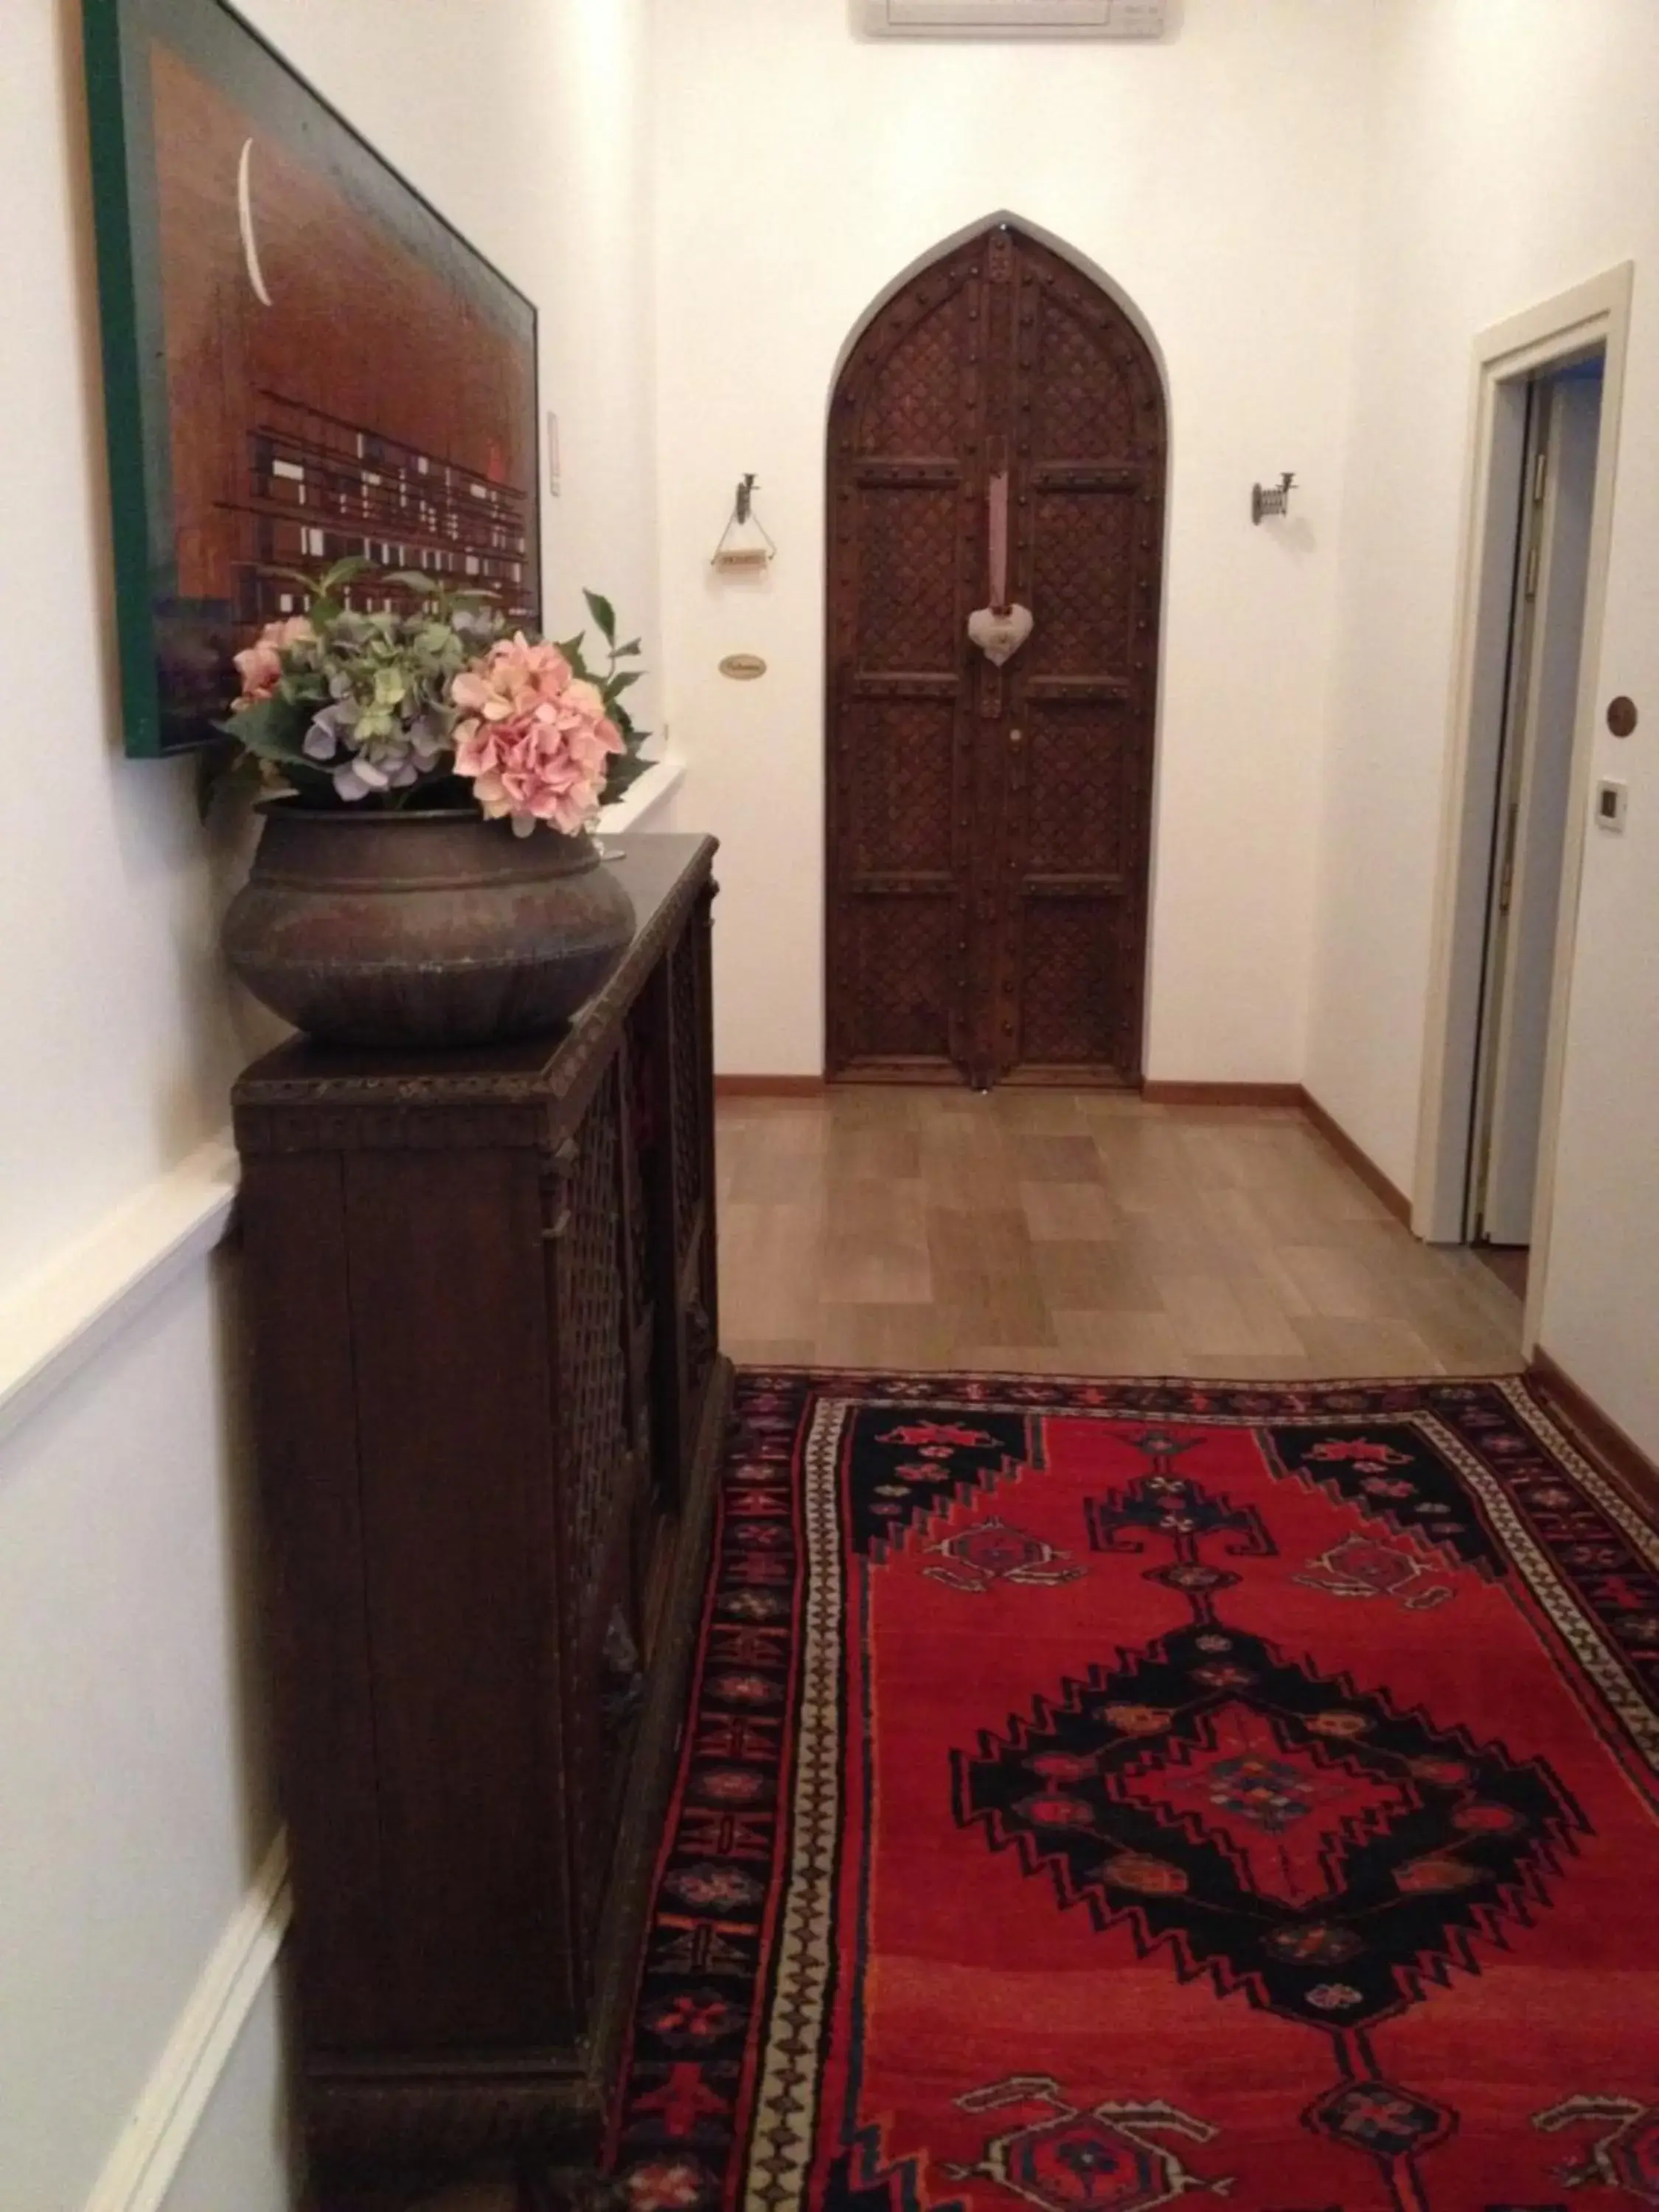 Decorative detail, Lobby/Reception in Ca' Dei Polo